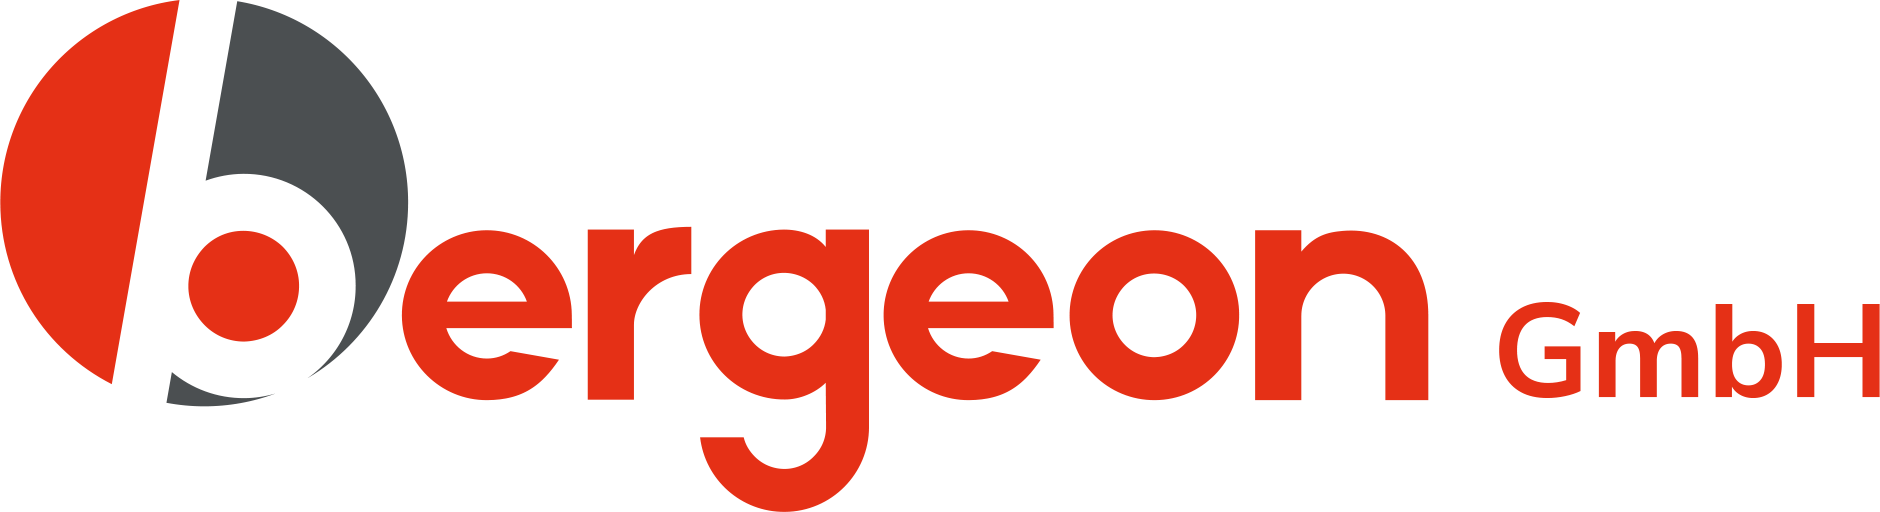 bergeon-logo-dunkel